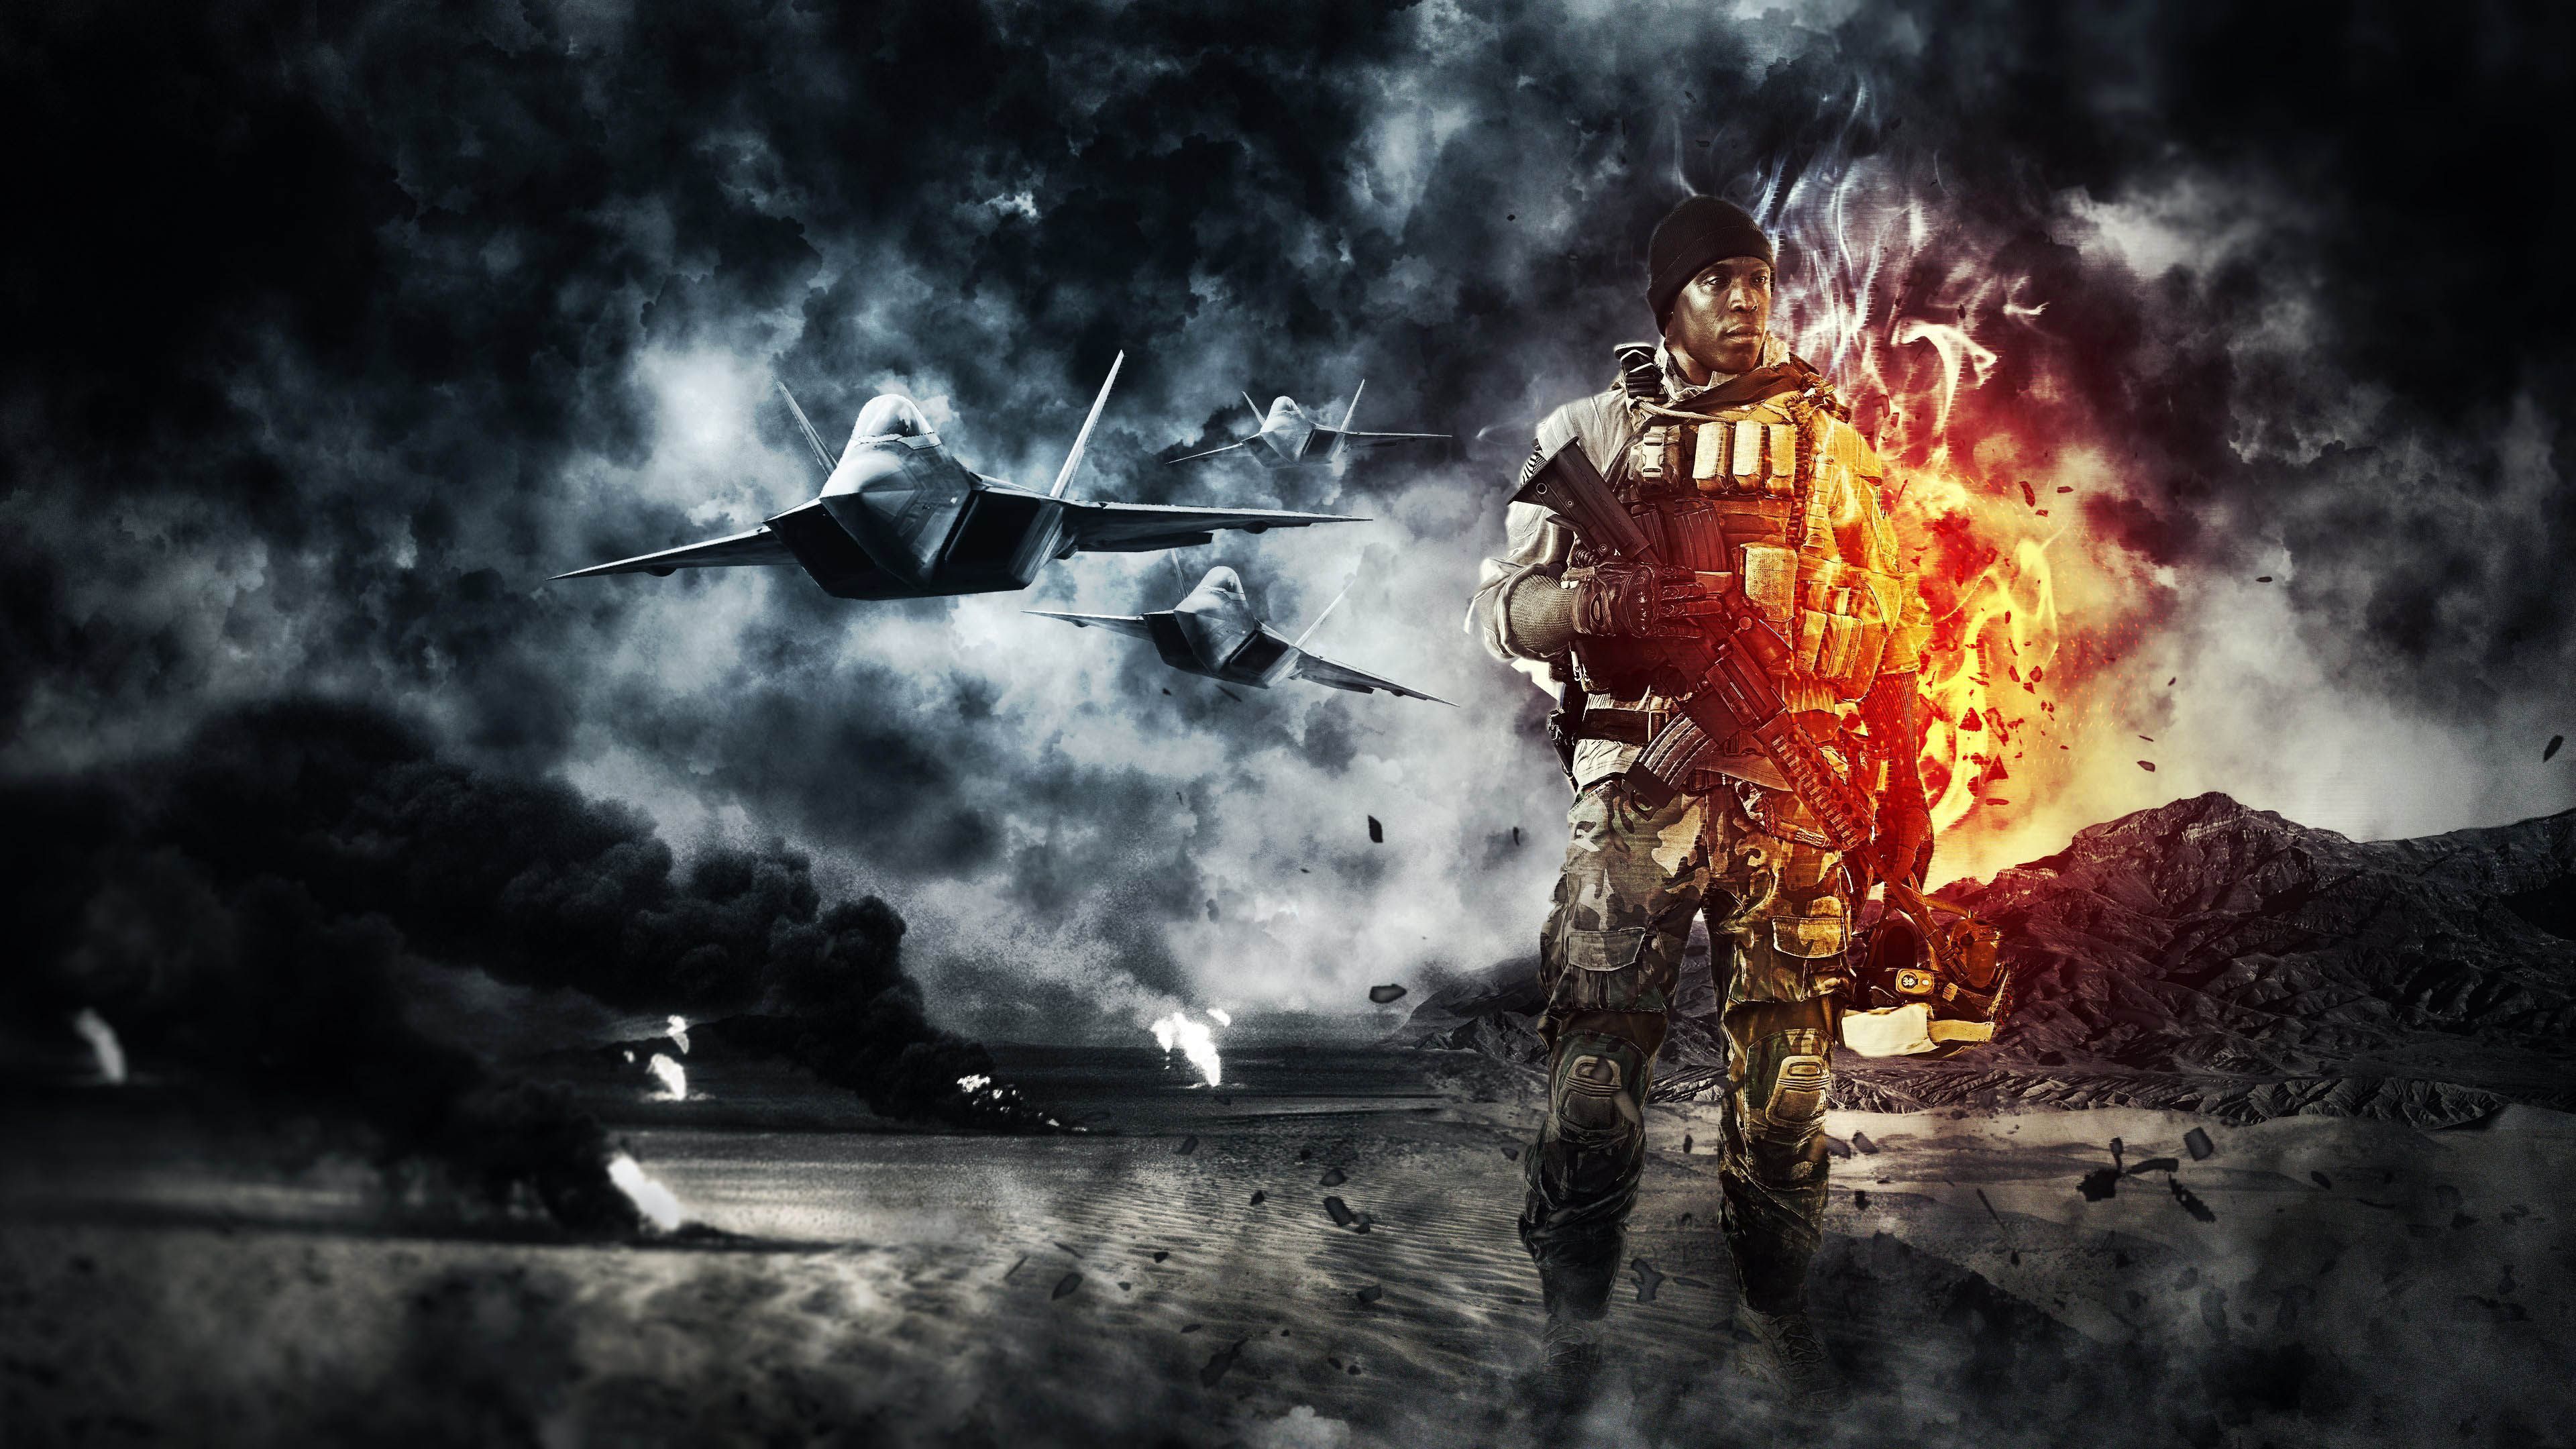 Battlefield 4 - Soldier & Fighter Jets - 3840x2160 - 4K 16/9 ...